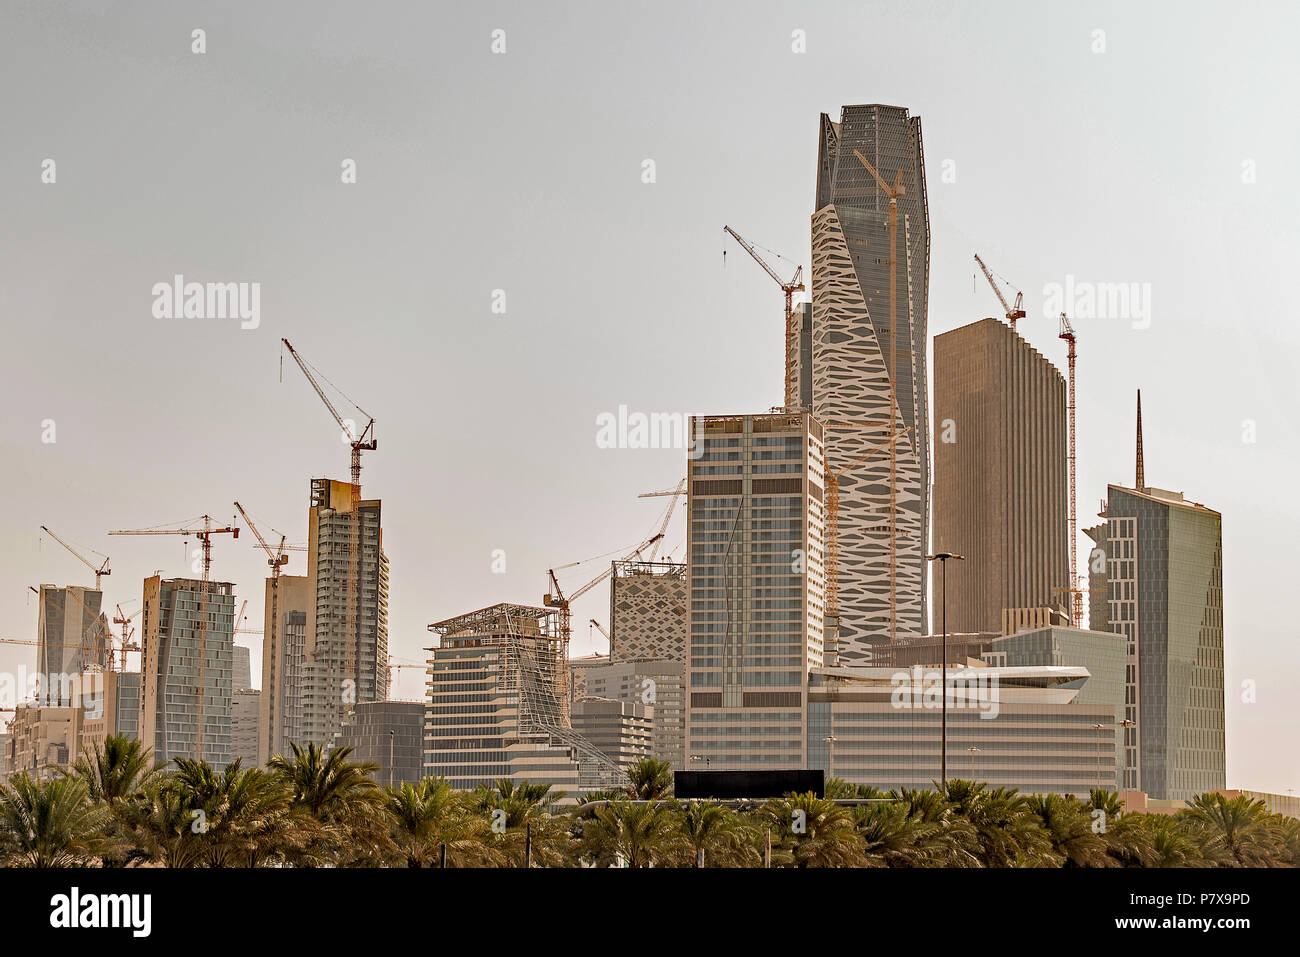 Le district financier King Abdullah (KAFD) en construction à Riyadh, Arabie Saoudite Banque D'Images